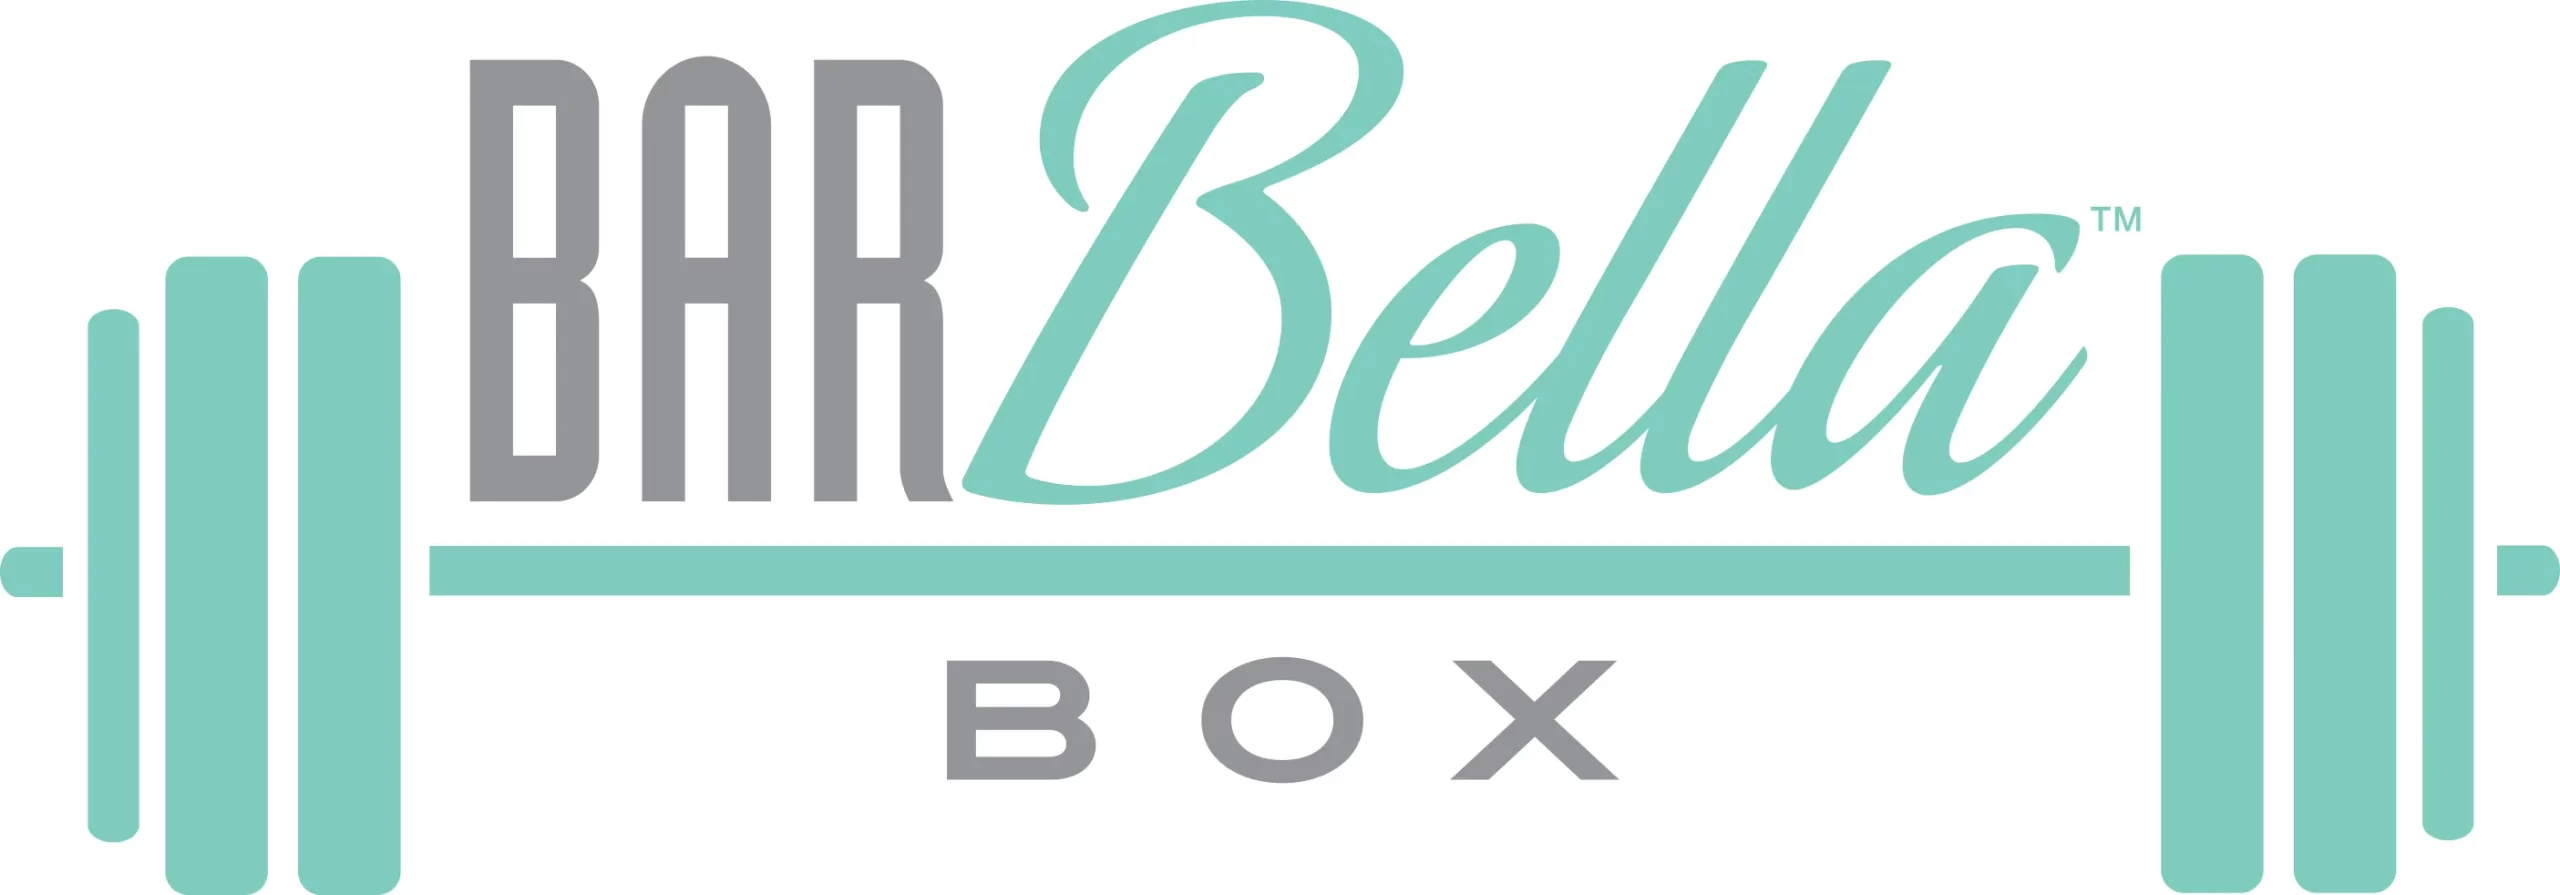 The Barbella Box